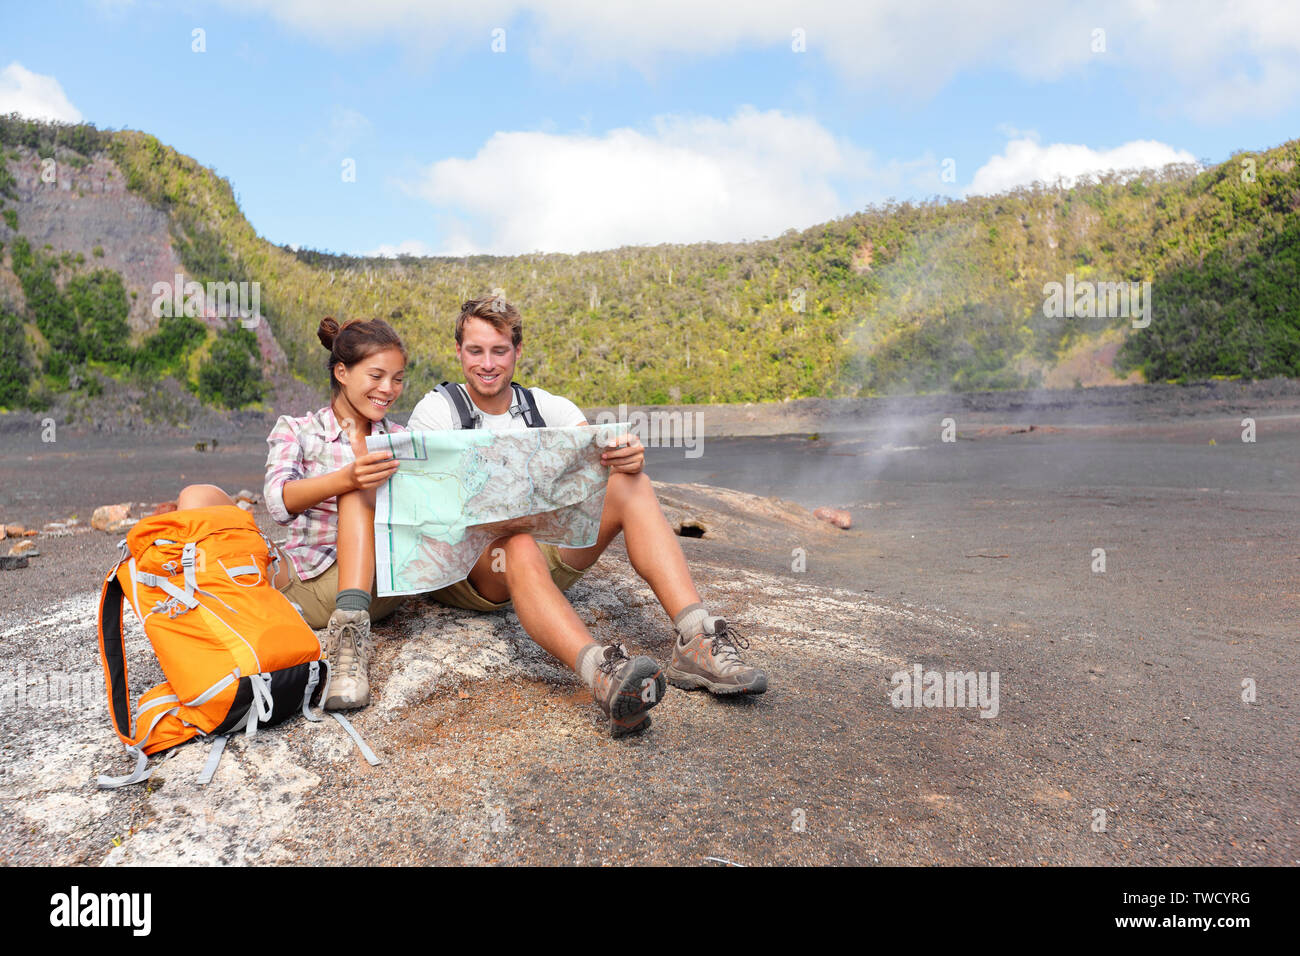 Paar Wandern auf Vulkan auf Hawaii bei Karte suchen. Glückliche junge Mann und Frau entspannende, schöne vulkanische Landschaft Natur auf Big Island auf Hawaii Volcanoes National Park, USA brechen. Stockfoto